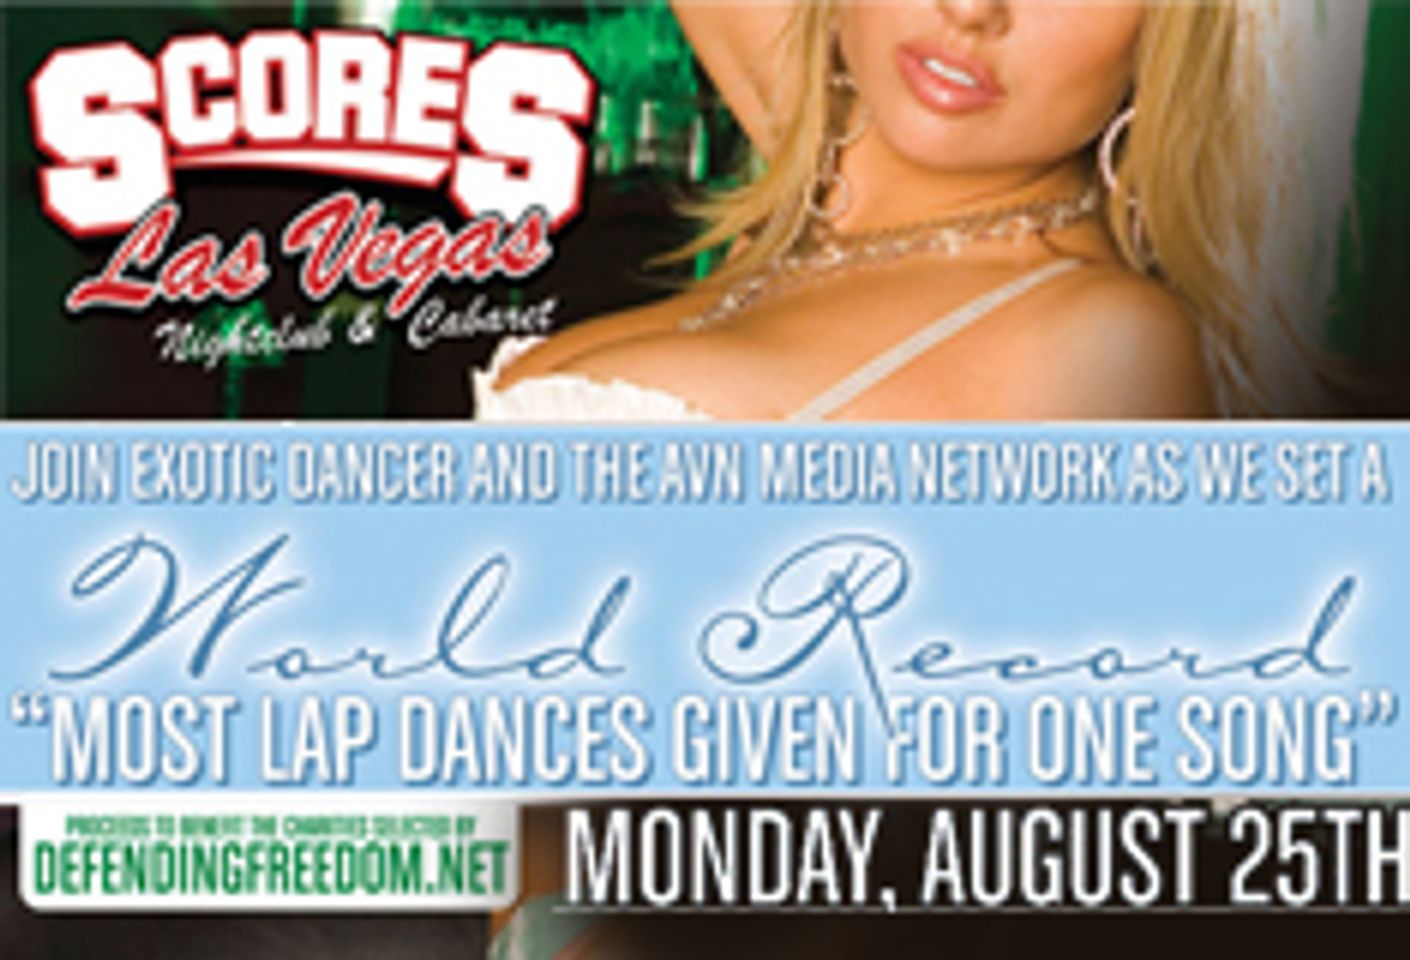 Scores Las Vegas to Set World Record for Lap Dances